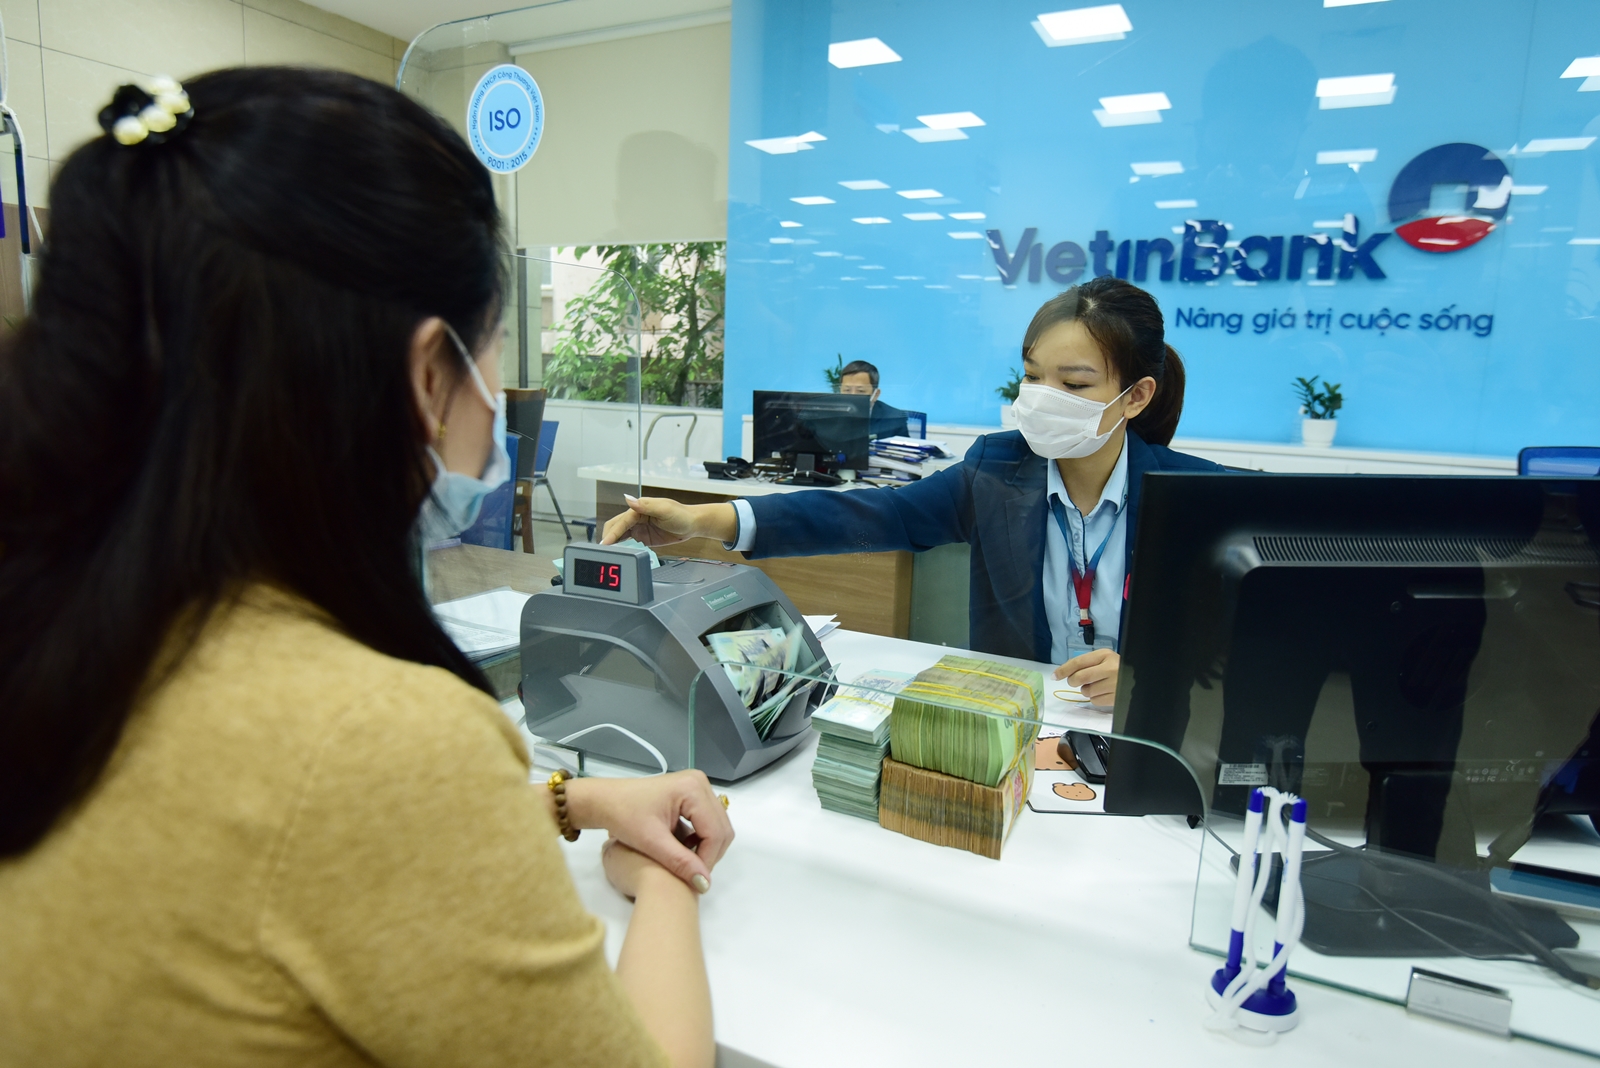 Quy mô và hiệu quả của VietinBank tăng trưởng tích cực, thực chất